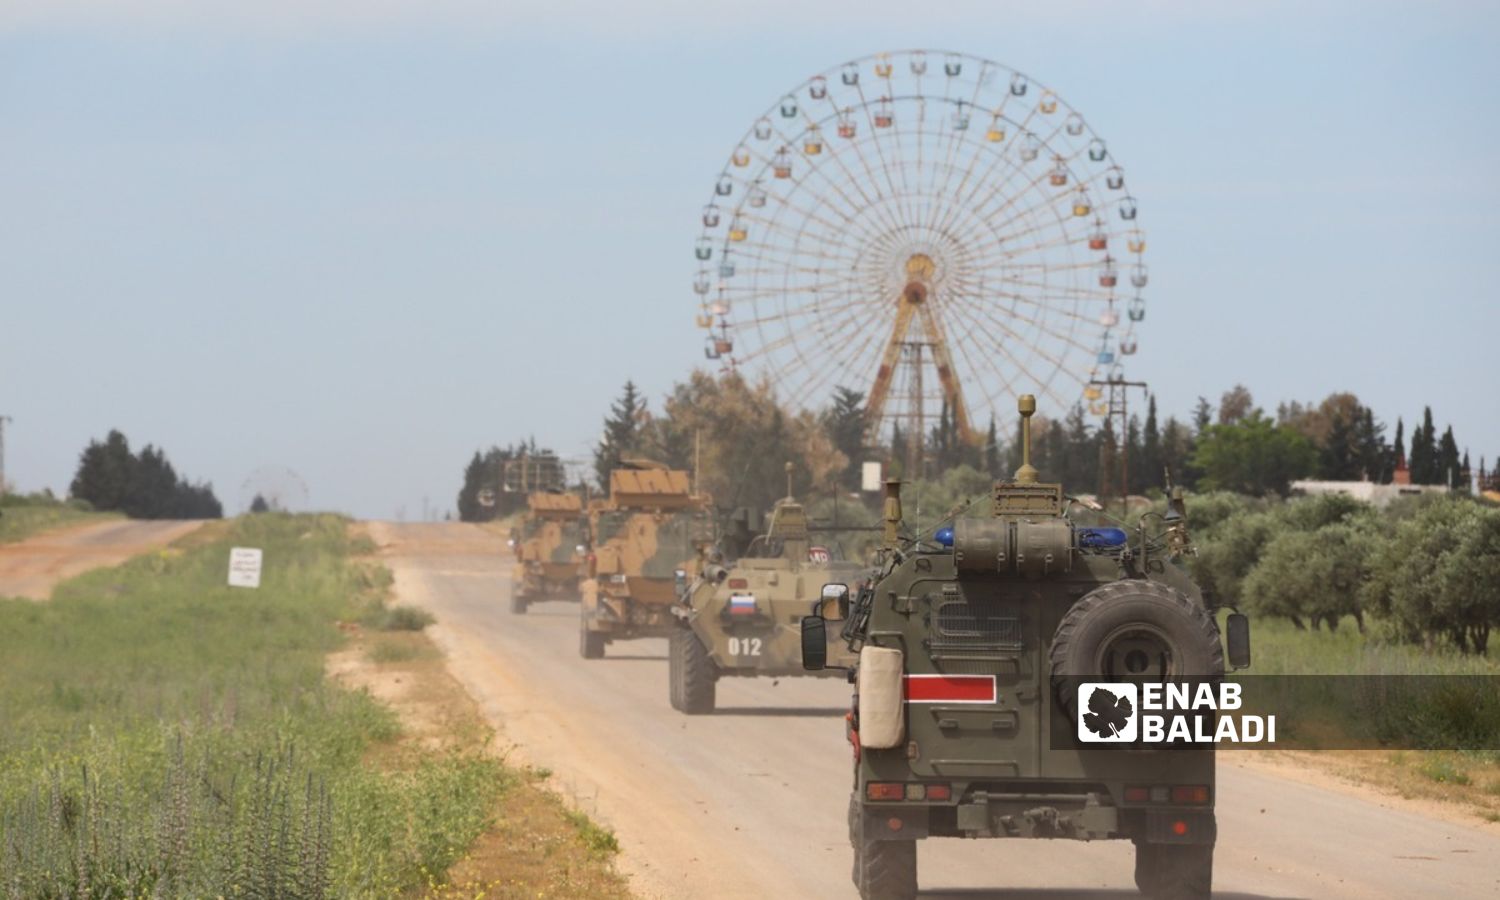 دورية تركية روسية على طريق "حلب- اللاذقية" الدولي قرب مدينة ملاهي "طيبة" - 5 من أيار 2020 (وزارة الدفاع التركية)